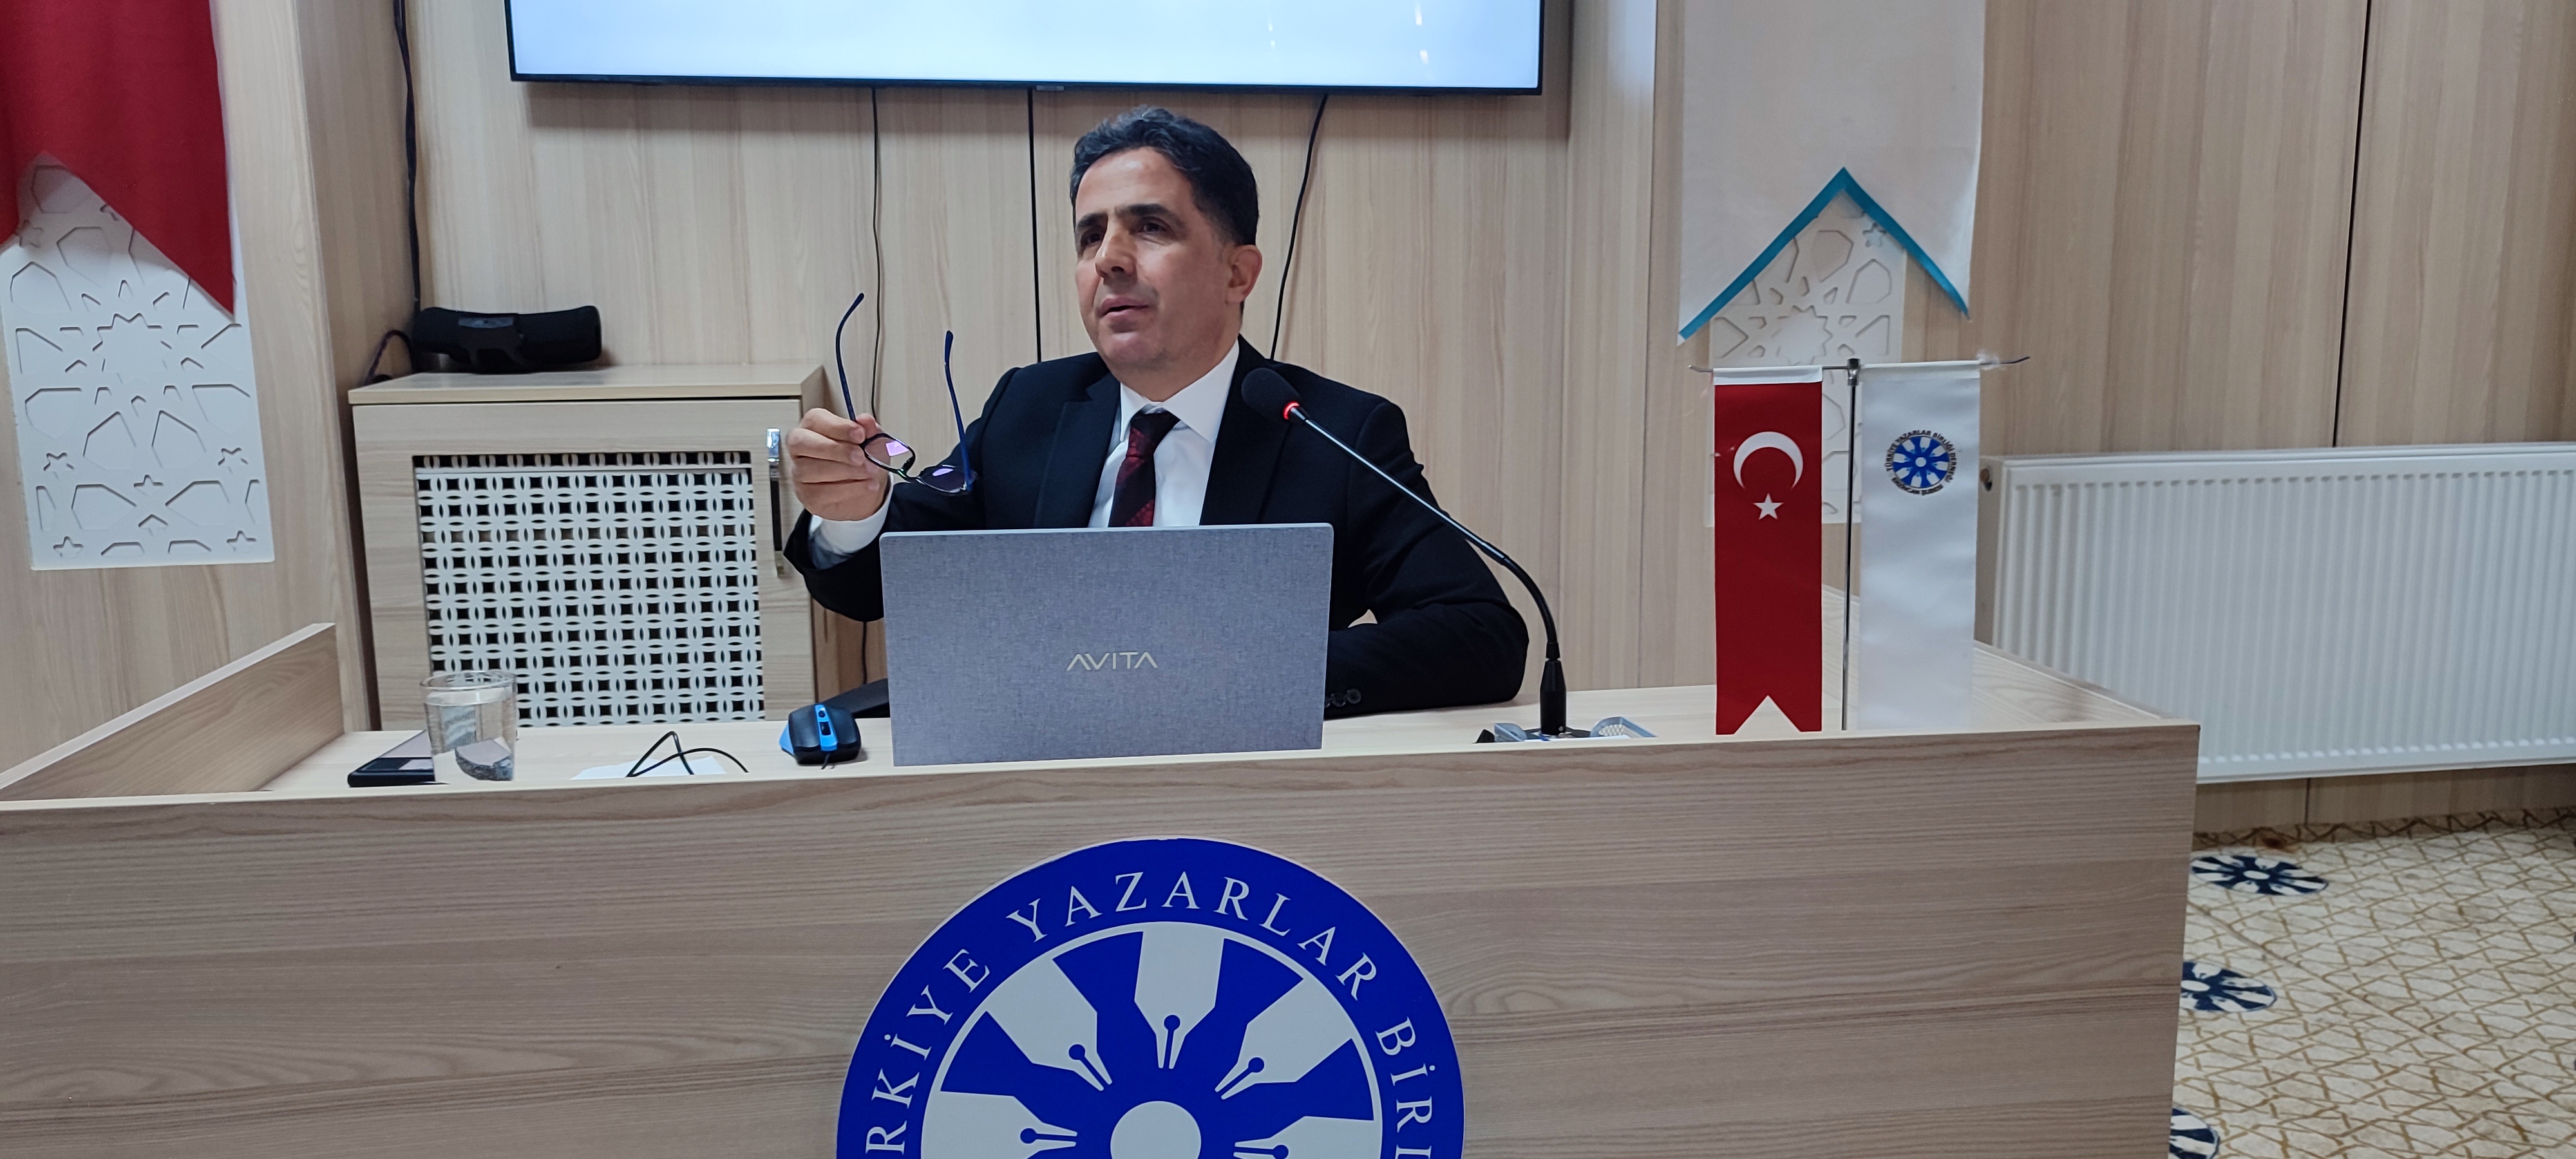 Türkiye Yazarlar Birliği Erzincan Şubesinde Konuşan Prof. Dr. Mücahit Kağan: “Mükemmeliyetçilik psikolojik rahatsızlıktır”